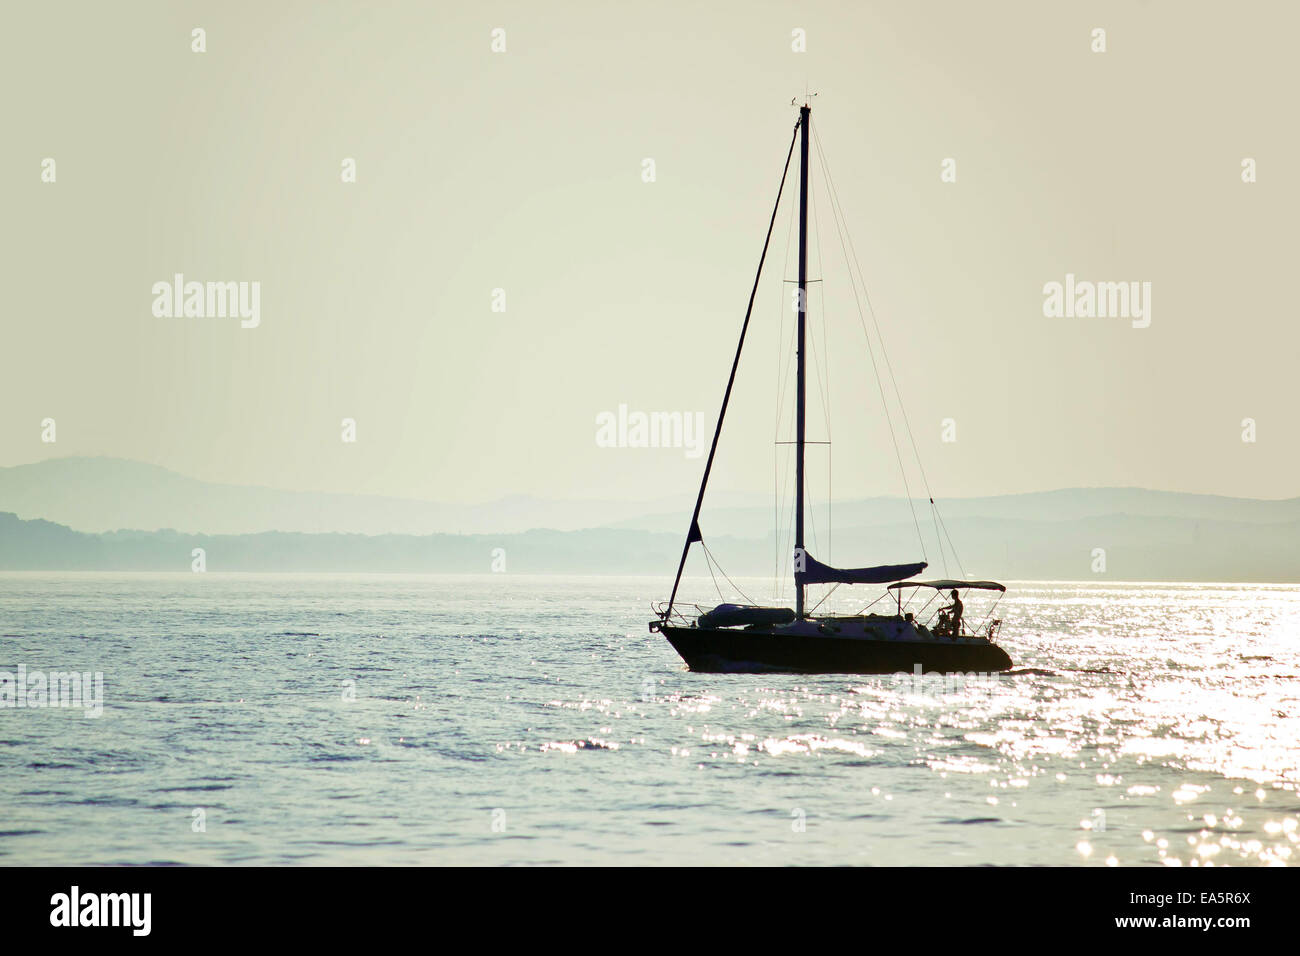 Segelboot-Silhouette auf dem offenen Wasser Stockfoto